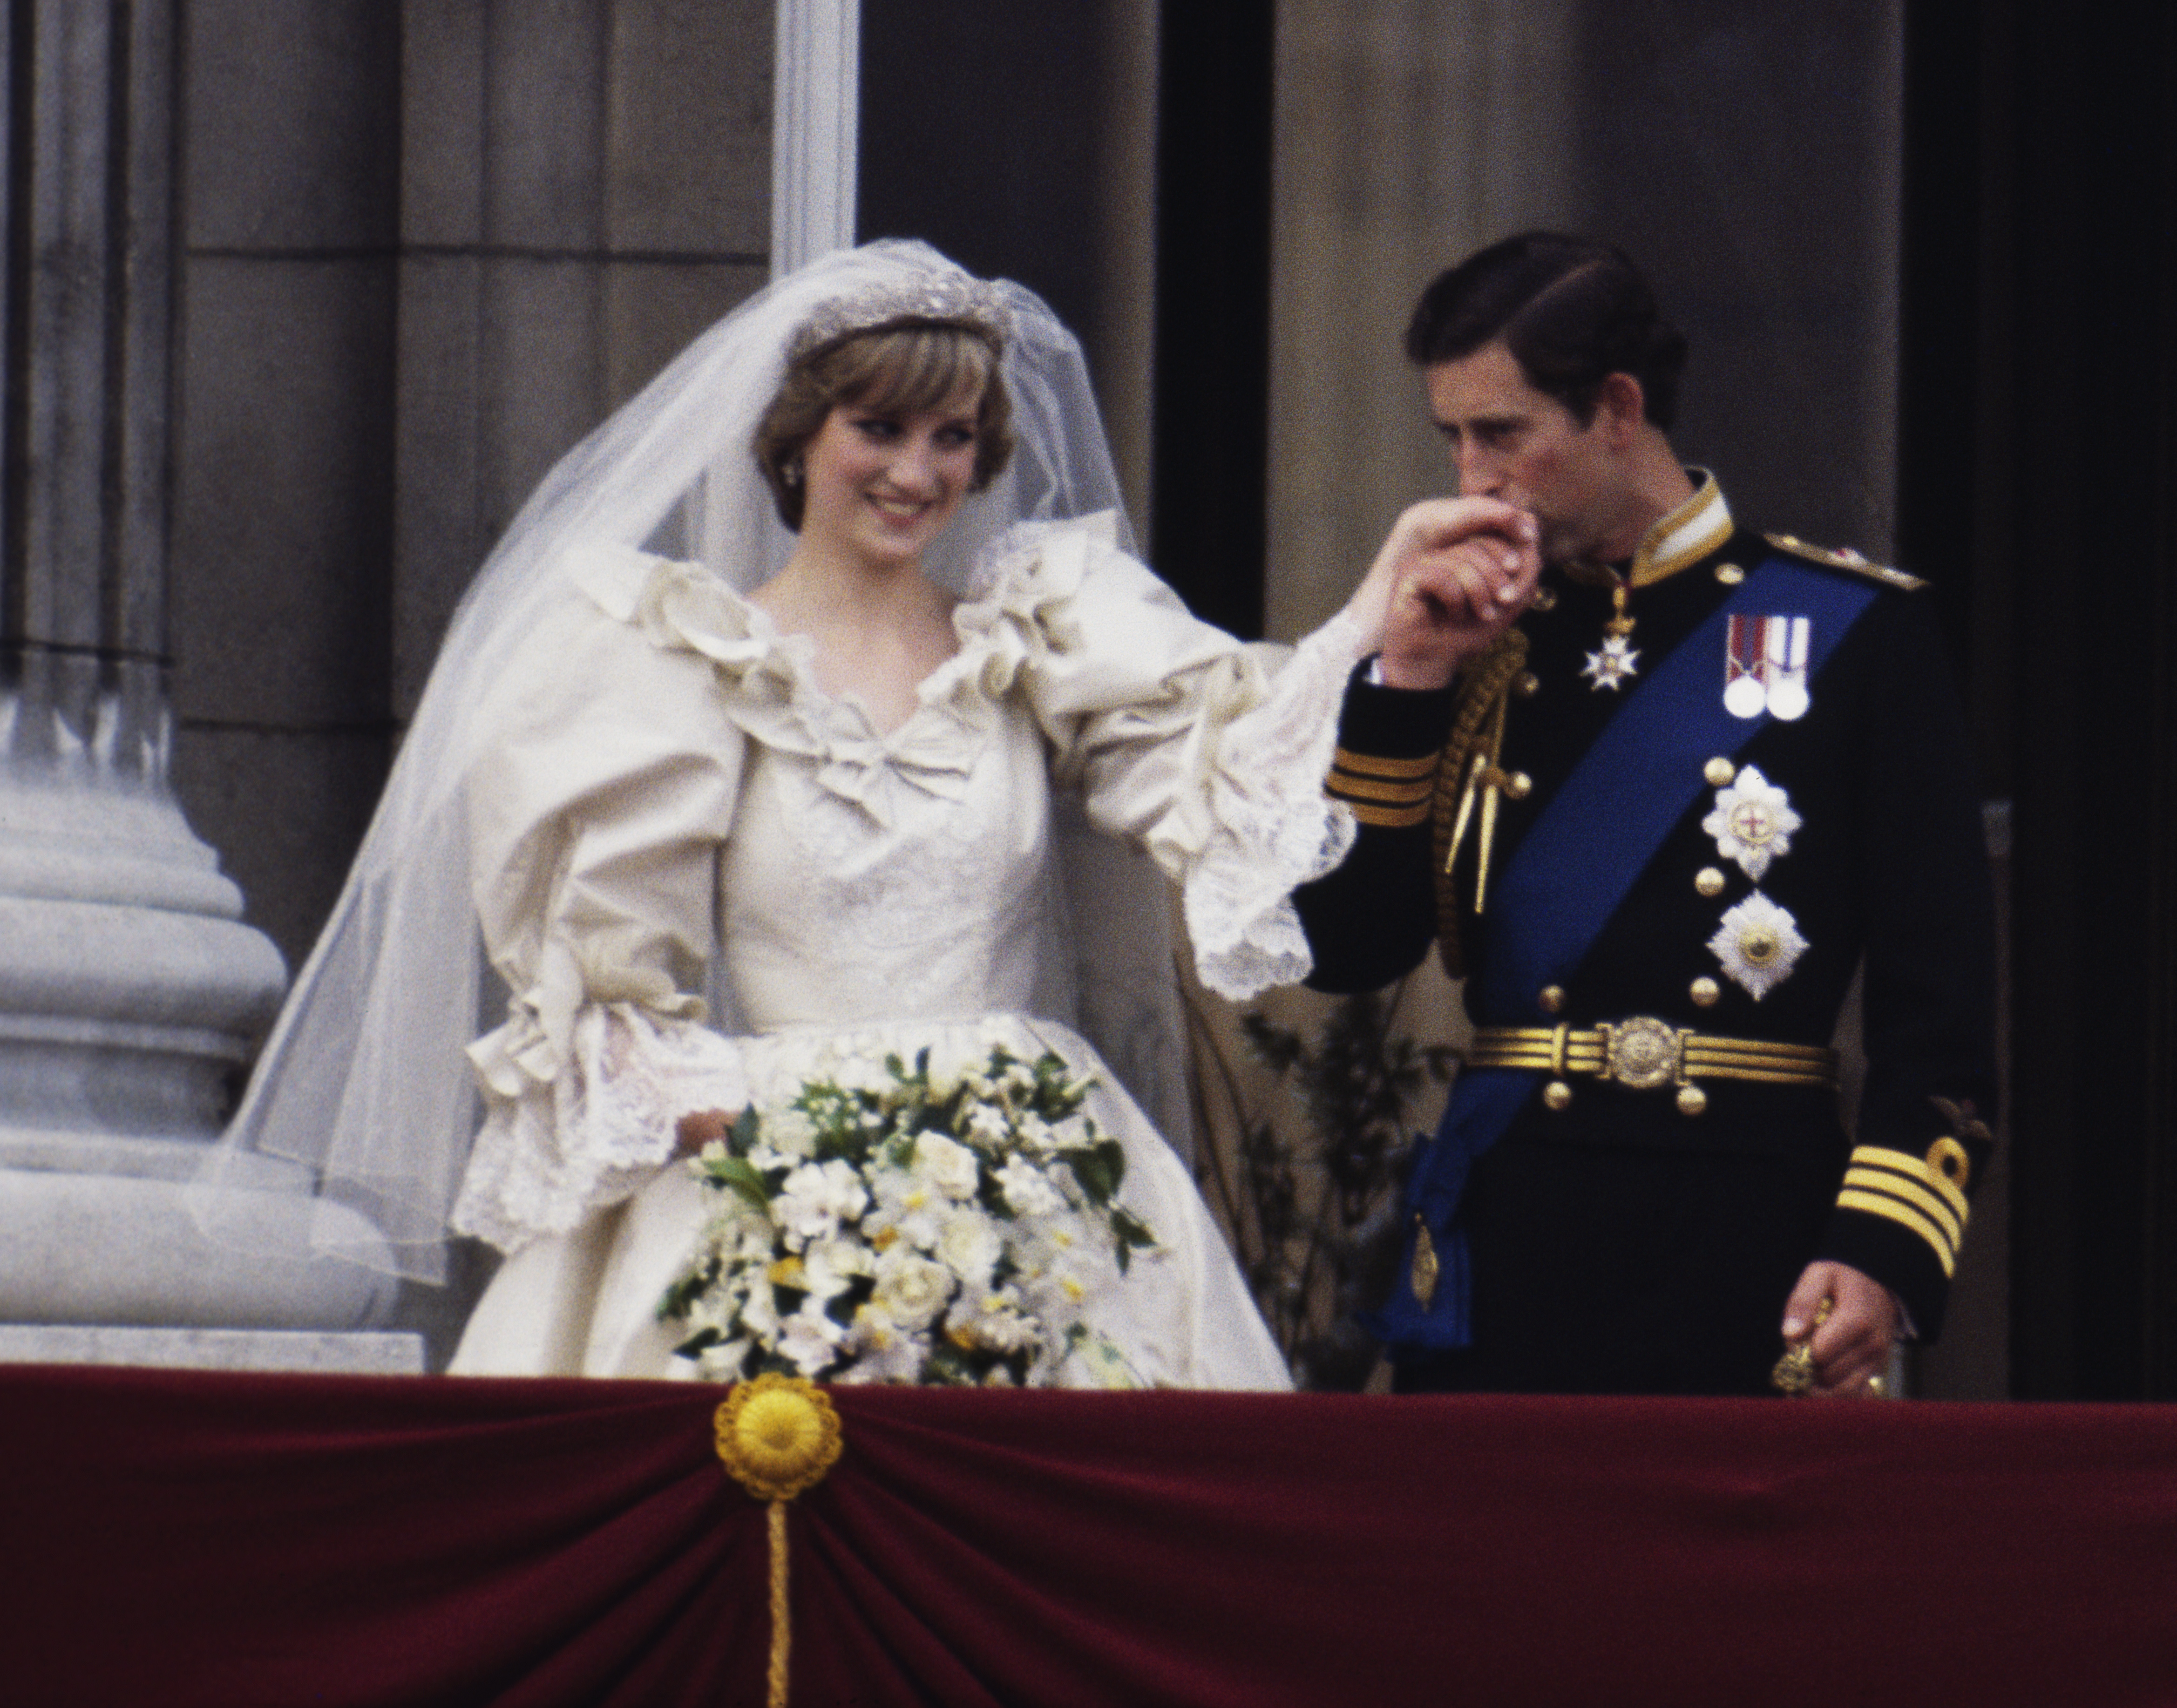 El entonces príncipe y la princesa de Gales en el balcón del Palacio de Buckingham el día de su boda, el 29 de julio de 1981
(Photo by Terry Fincher/Princess Diana Archive/Getty Images)